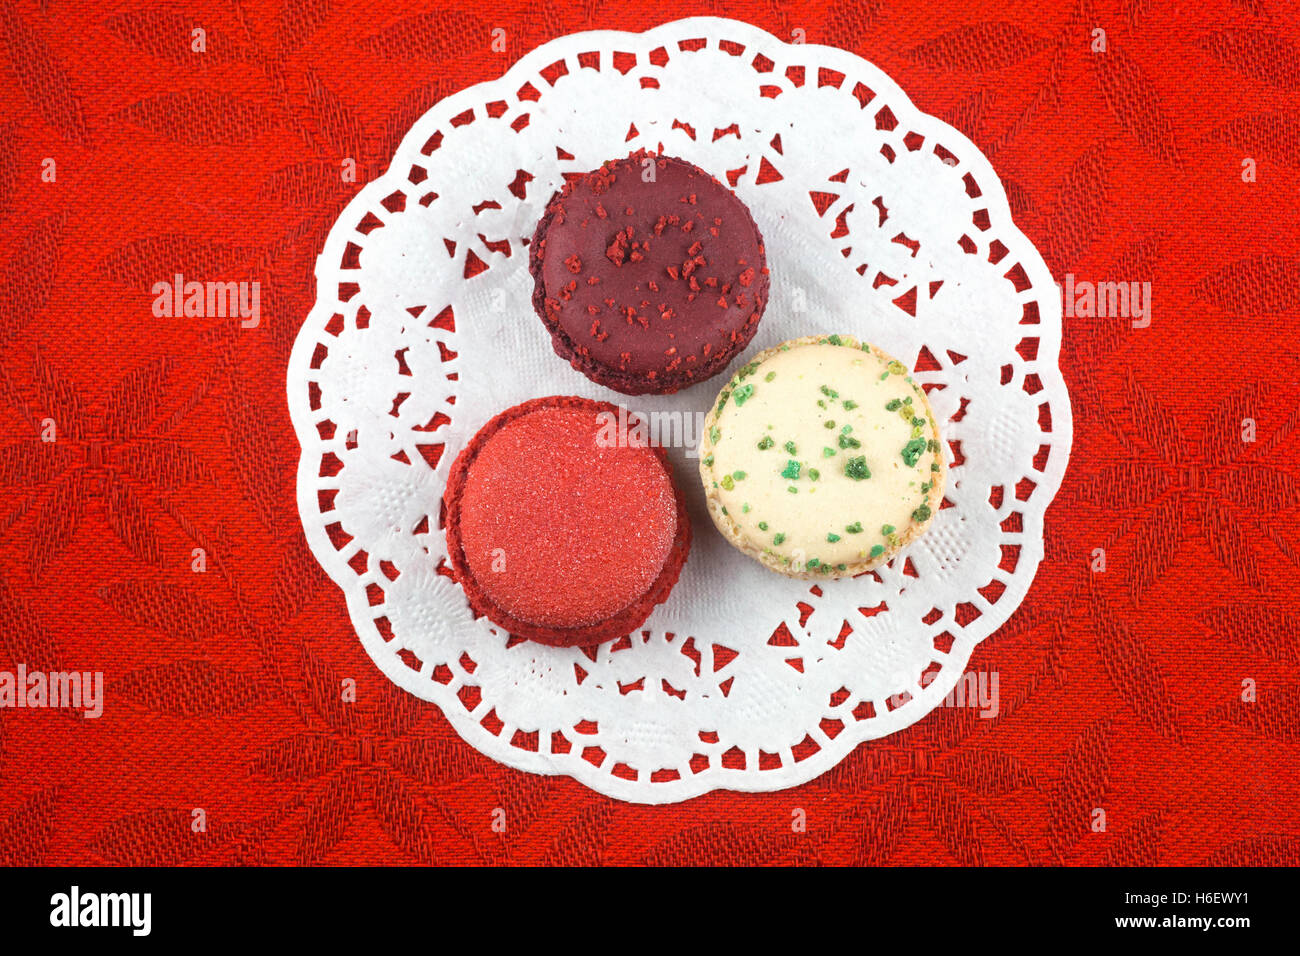 Weihnachten Macarons, Vanille, Basilikum, Matt Cranberry und Glühwein Weine Aromen auf roten Tischdecke Stockfoto